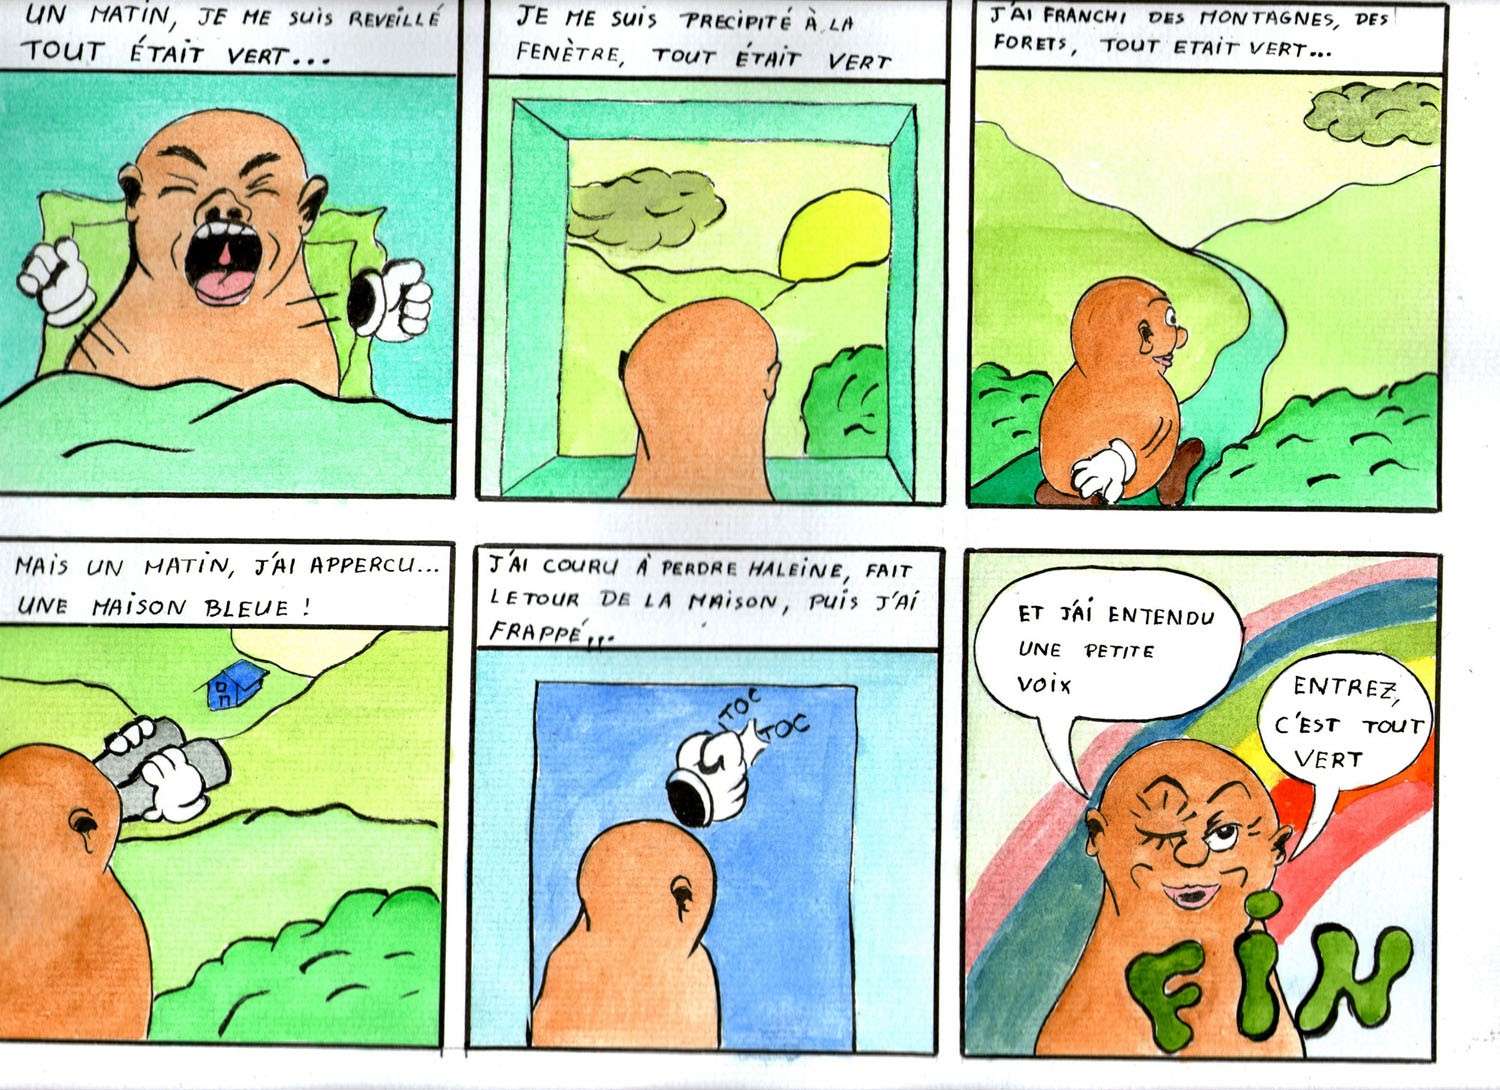 Le strip BD [clôture 1 mars 2011] - Page 2 Toutve12